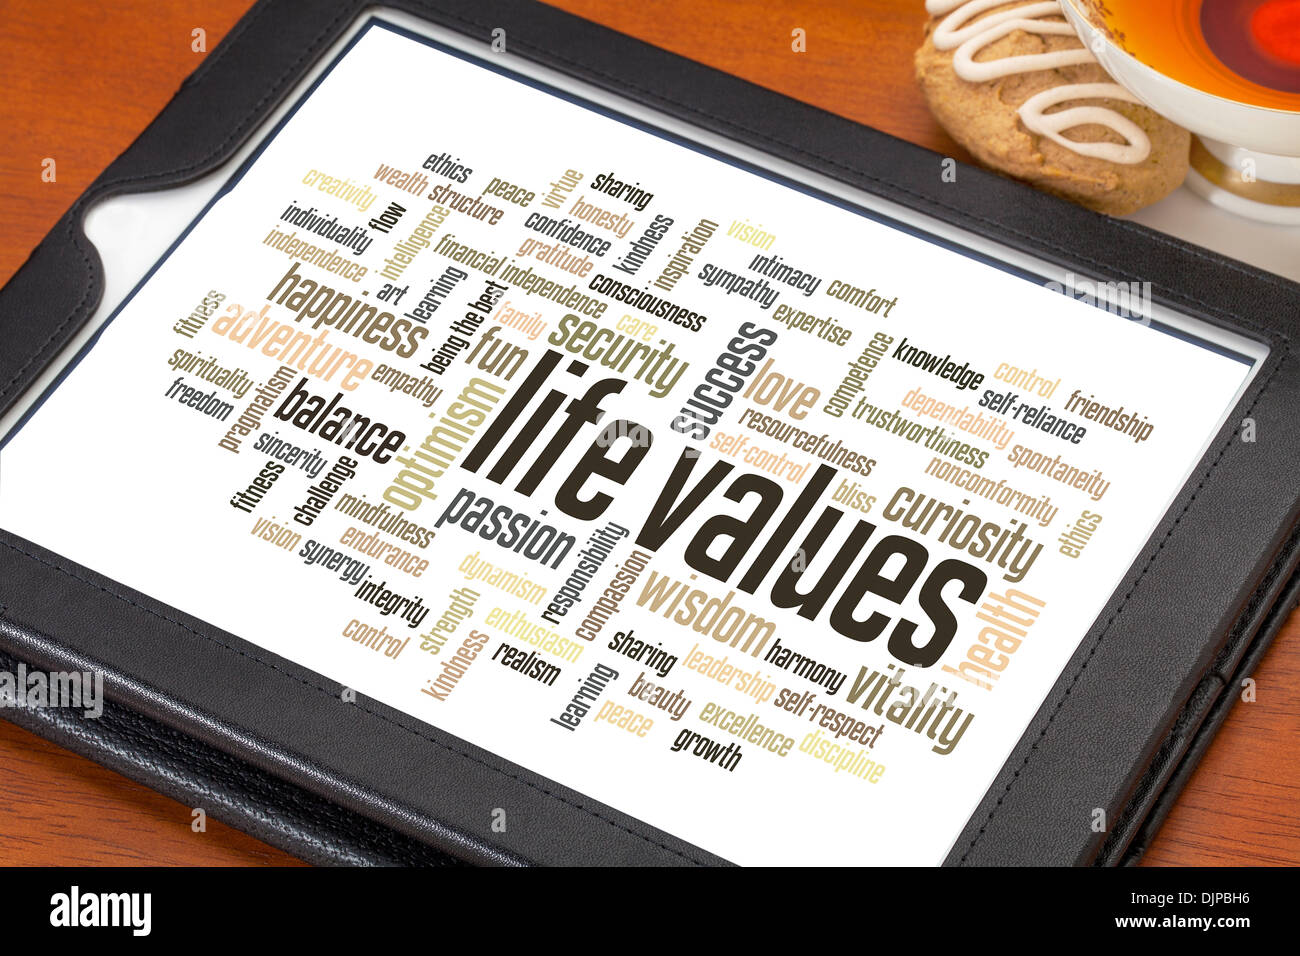 Valores de la vida - la palabra nube en una tableta digital con una taza de té Foto de stock